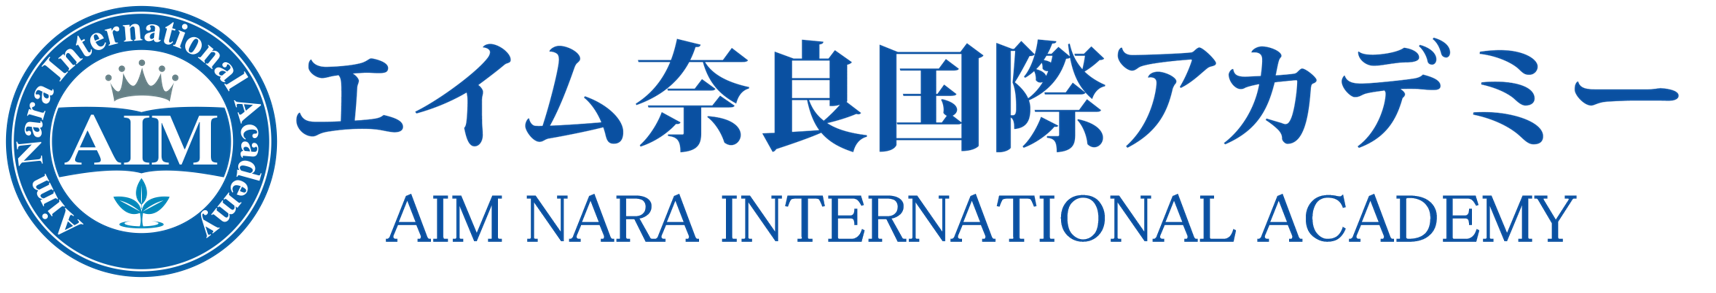 エイム奈良国際アカデミー -Aim Nara International Academy-